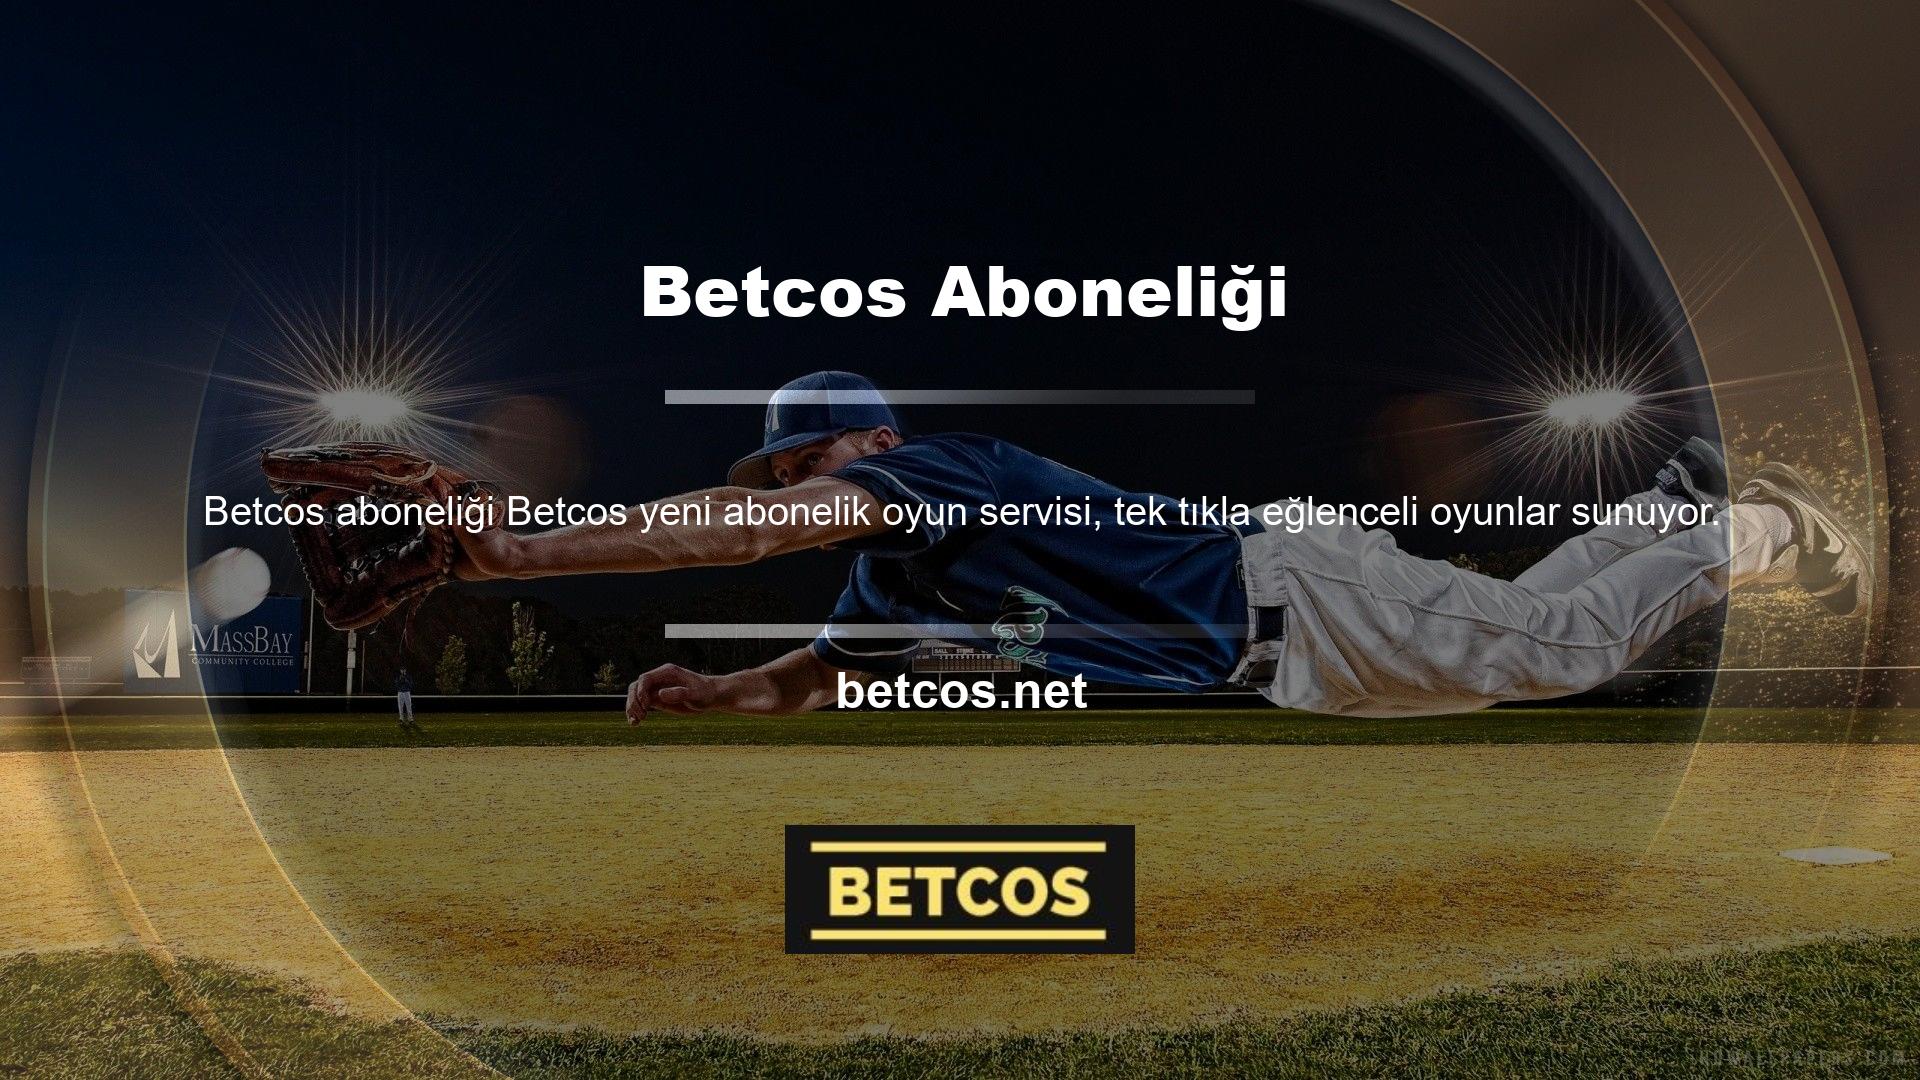 Betcos Online Bahisçi, casino oyun deneyiminizi daha verimli hale getirir